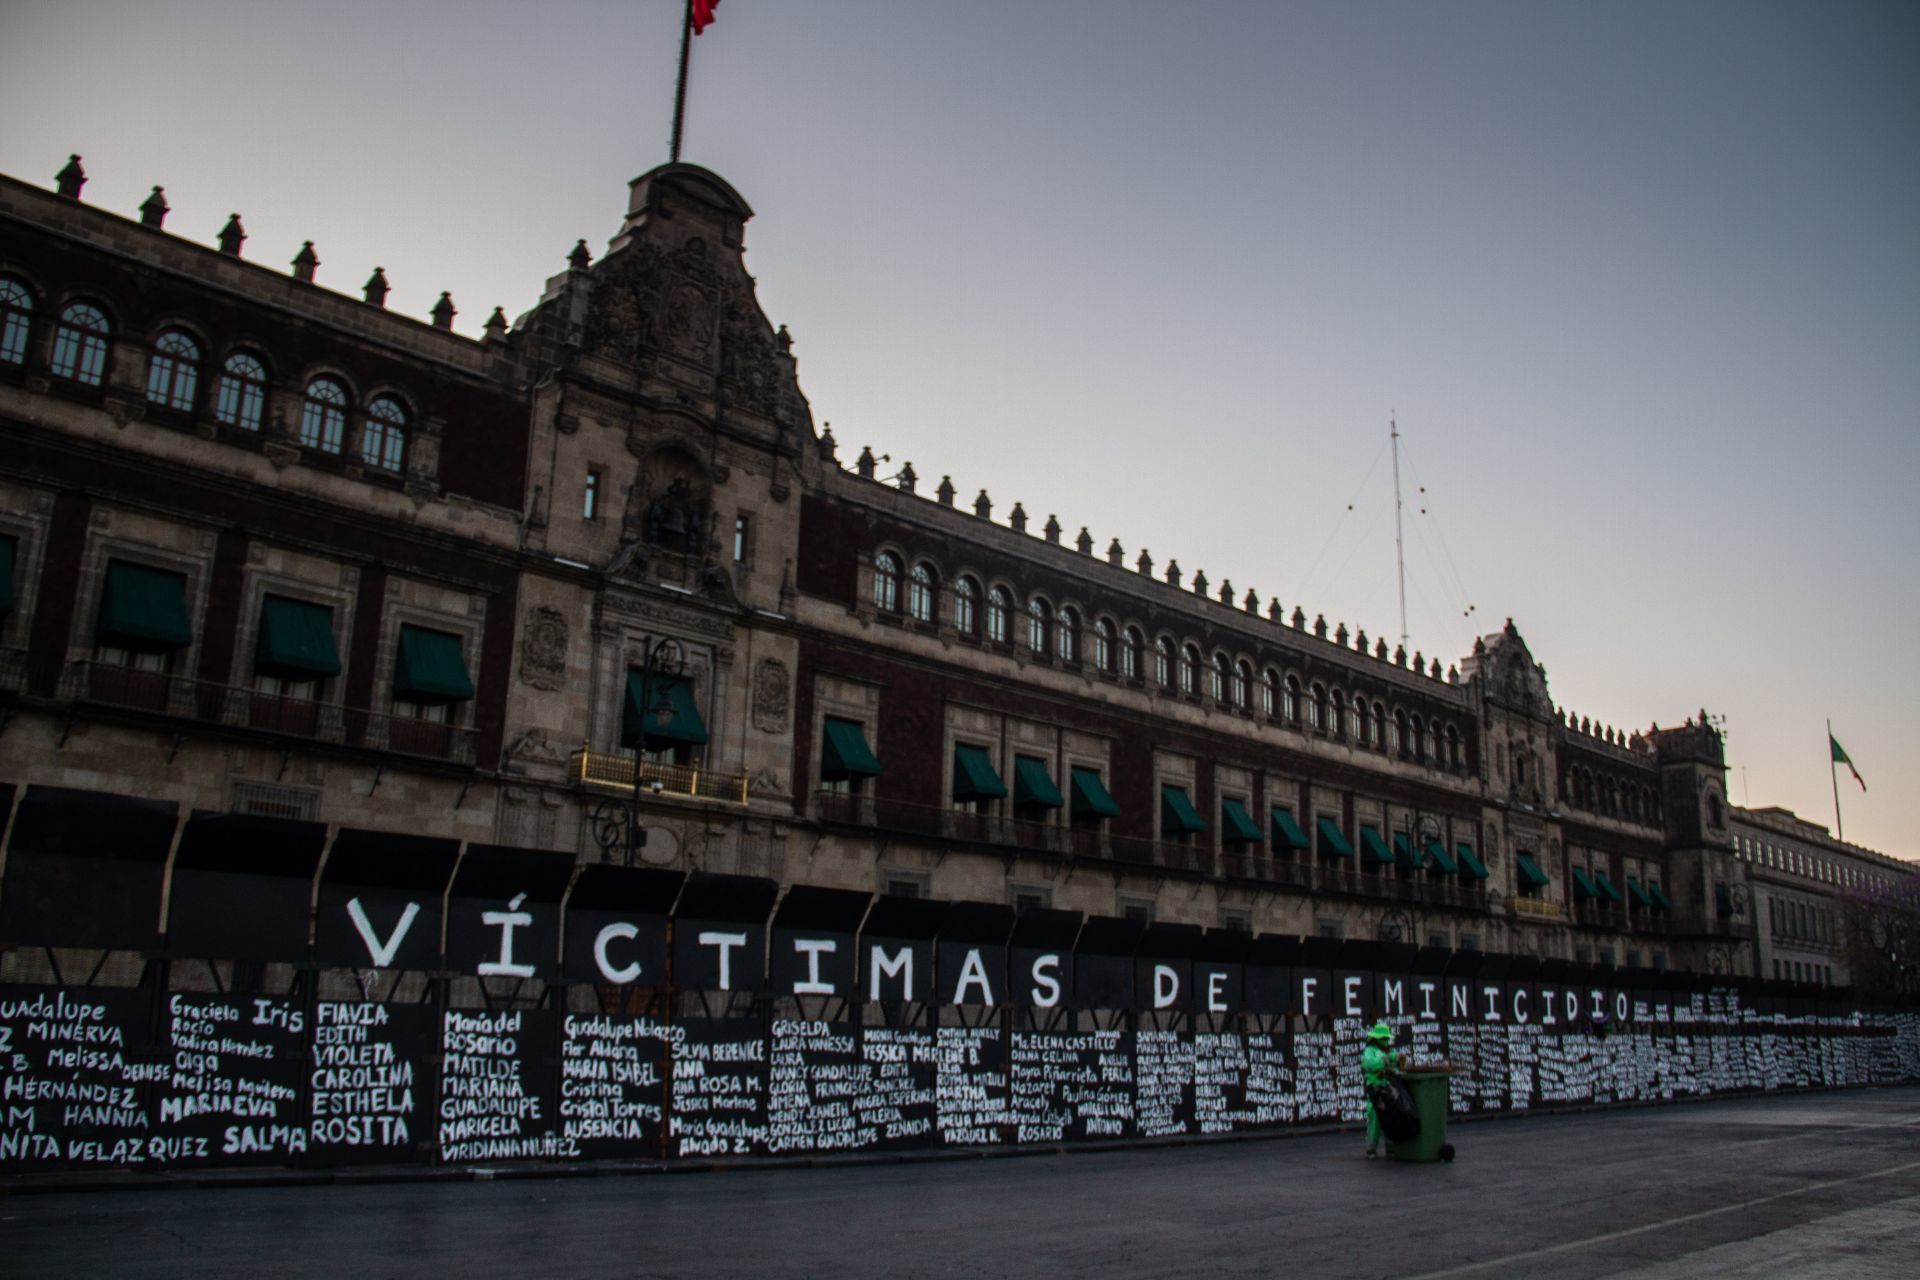 "Las calles también son nuestras": Renombran simbólicamente calles con nombres de mujeres por el 8M